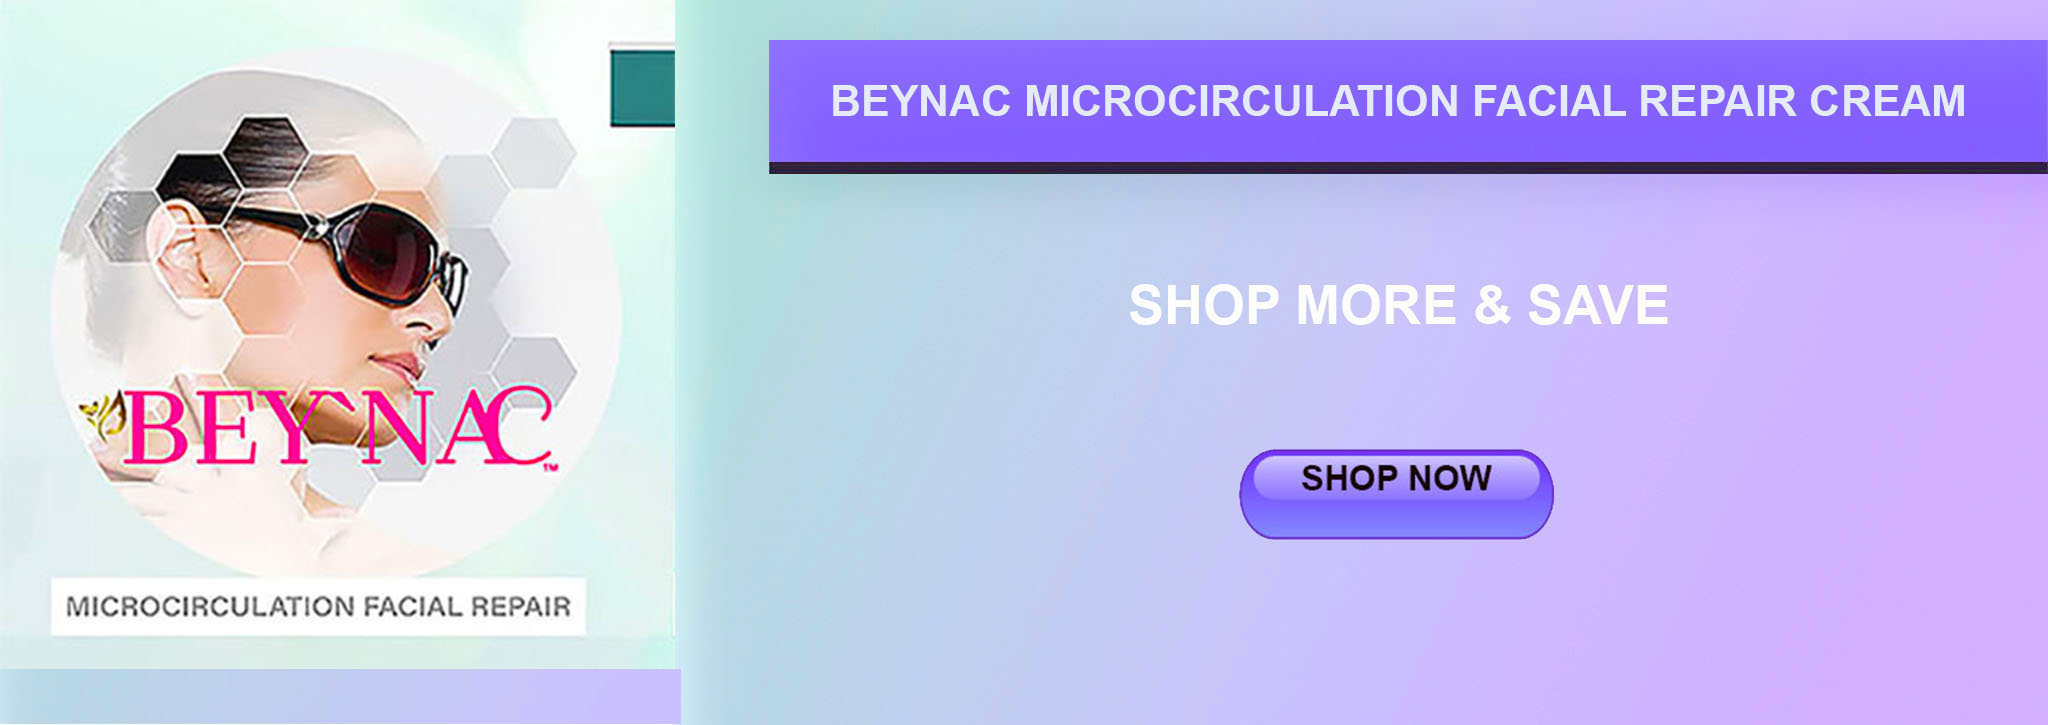 beynac_microcirculation_facial_repair_cream-all1c.jpg